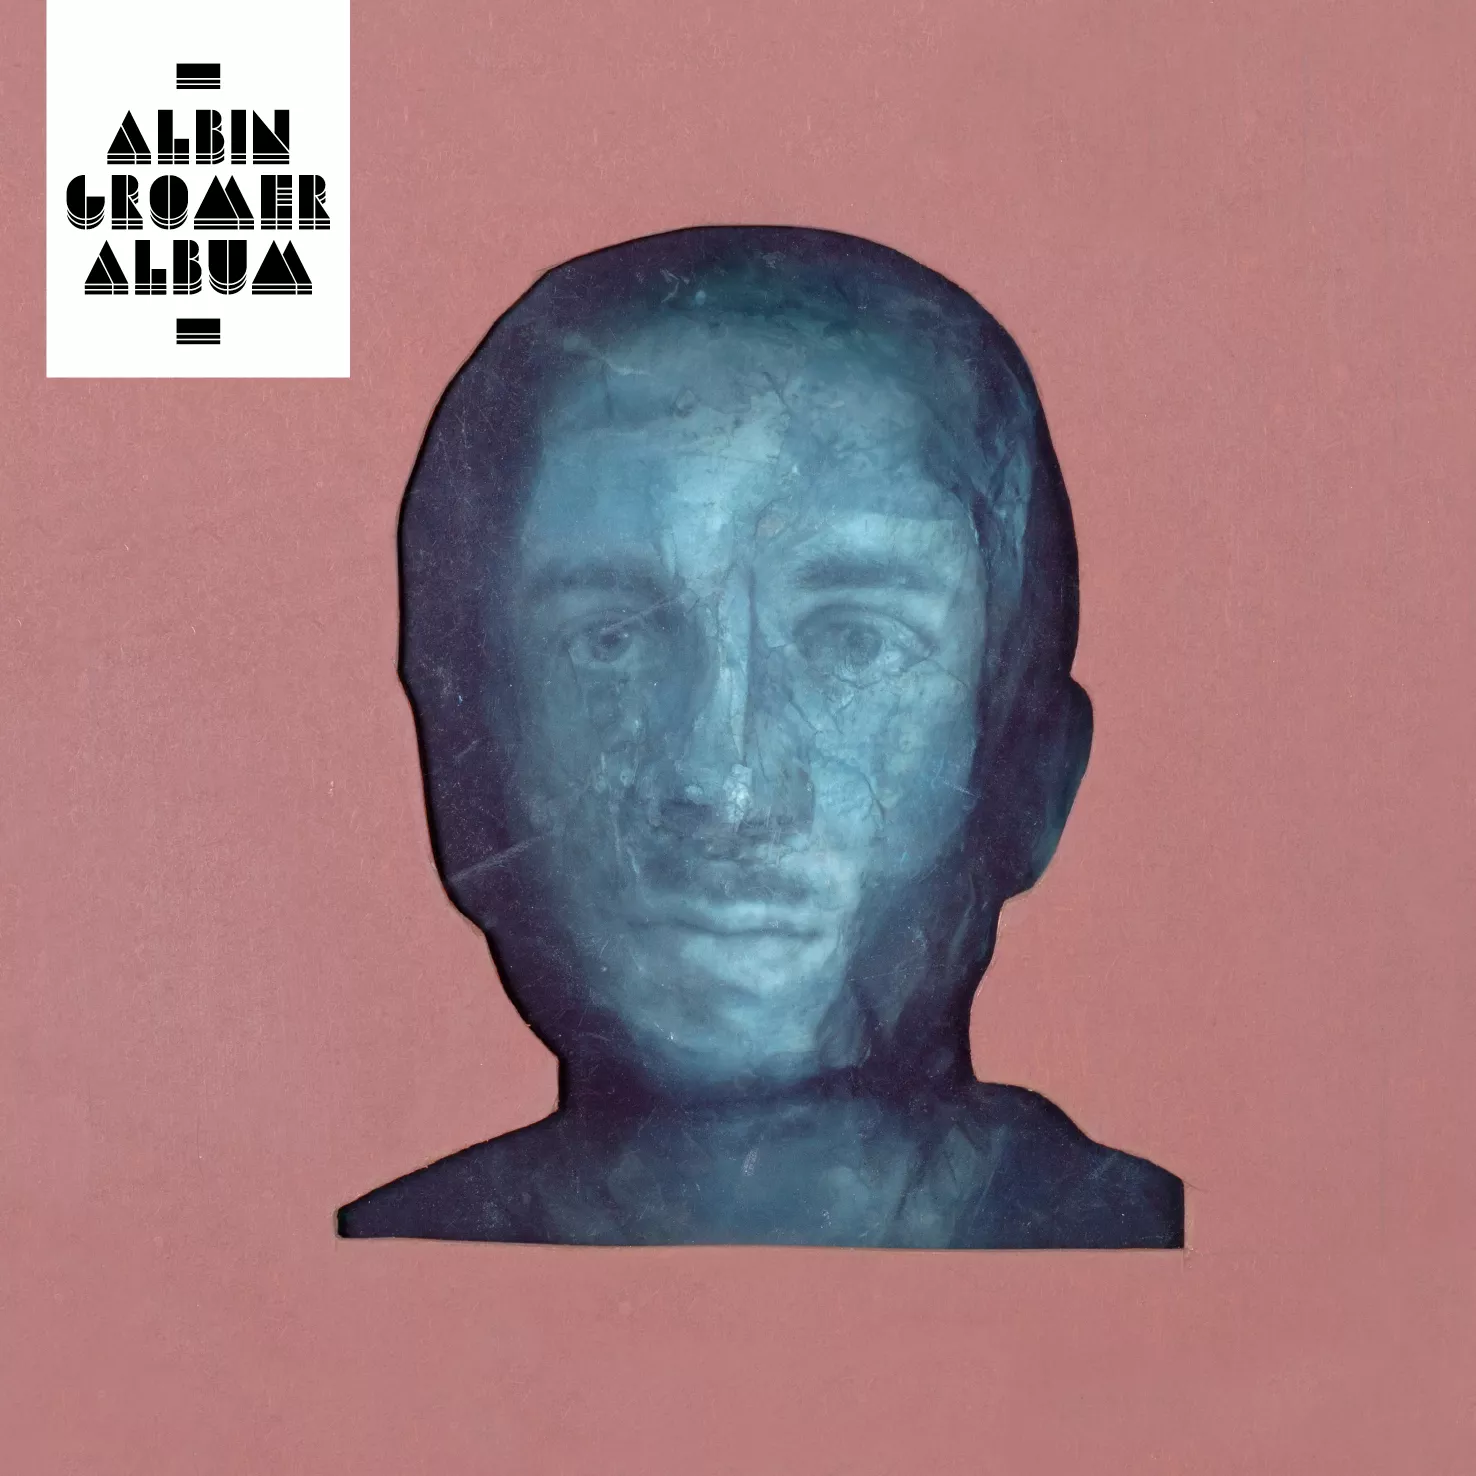 Album - Albin Gromer